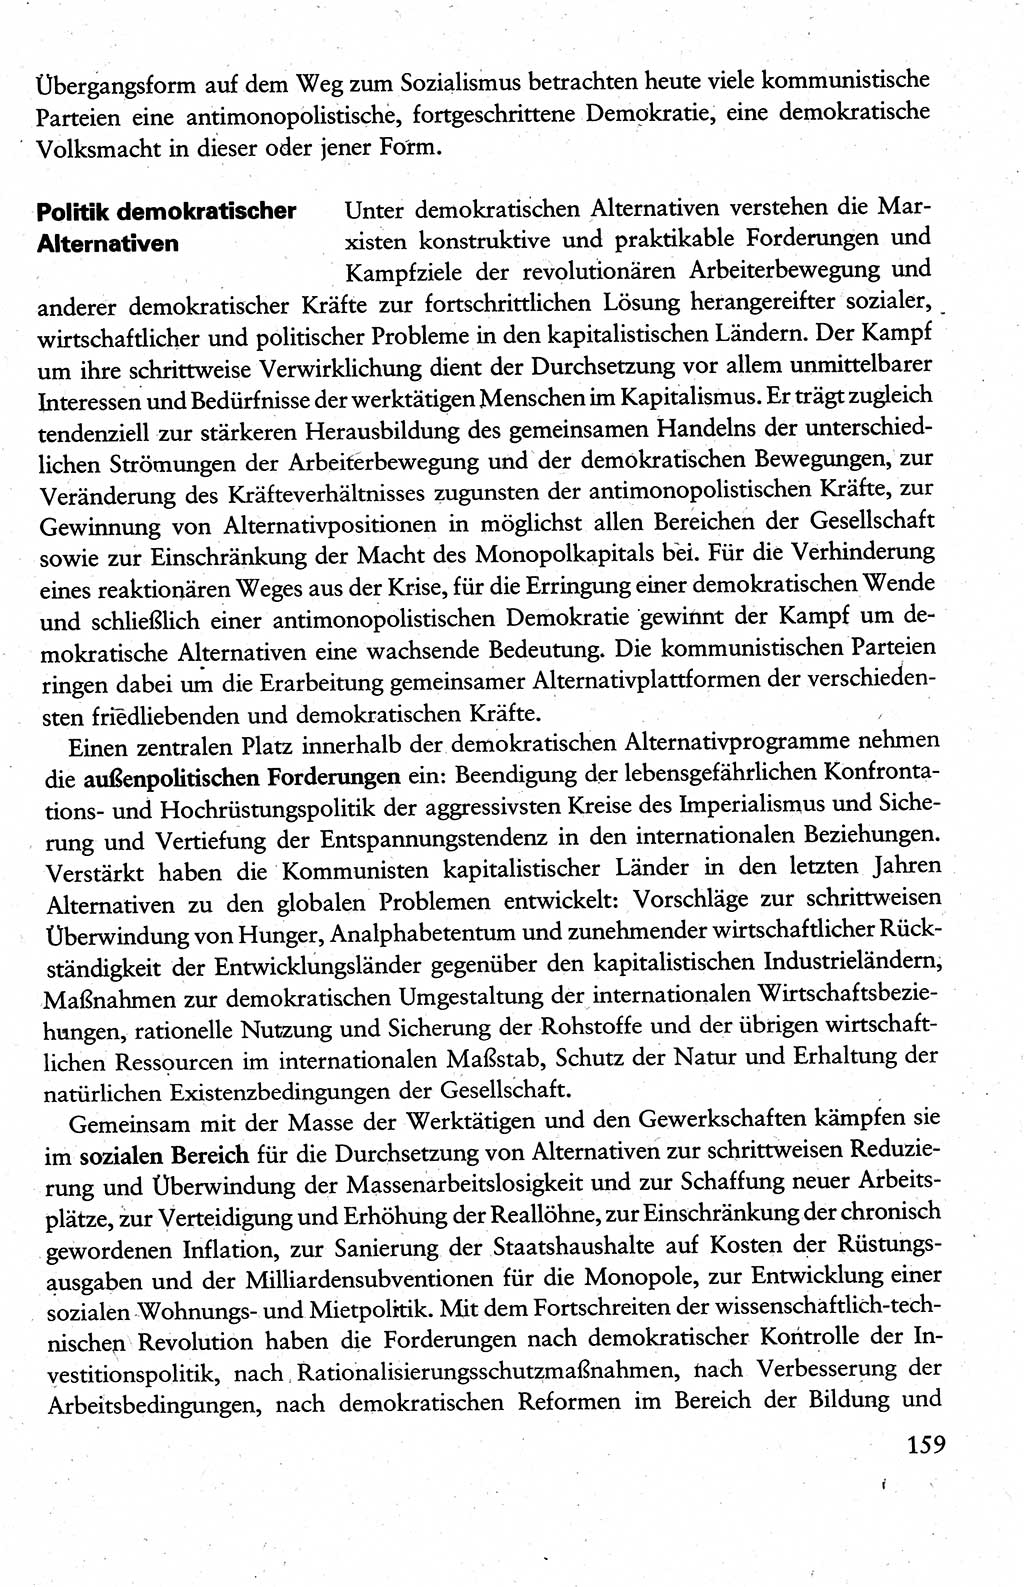 Wissenschaftlicher Kommunismus [Deutsche Demokratische Republik (DDR)], Lehrbuch für das marxistisch-leninistische Grundlagenstudium 1983, Seite 159 (Wiss. Komm. DDR Lb. 1983, S. 159)